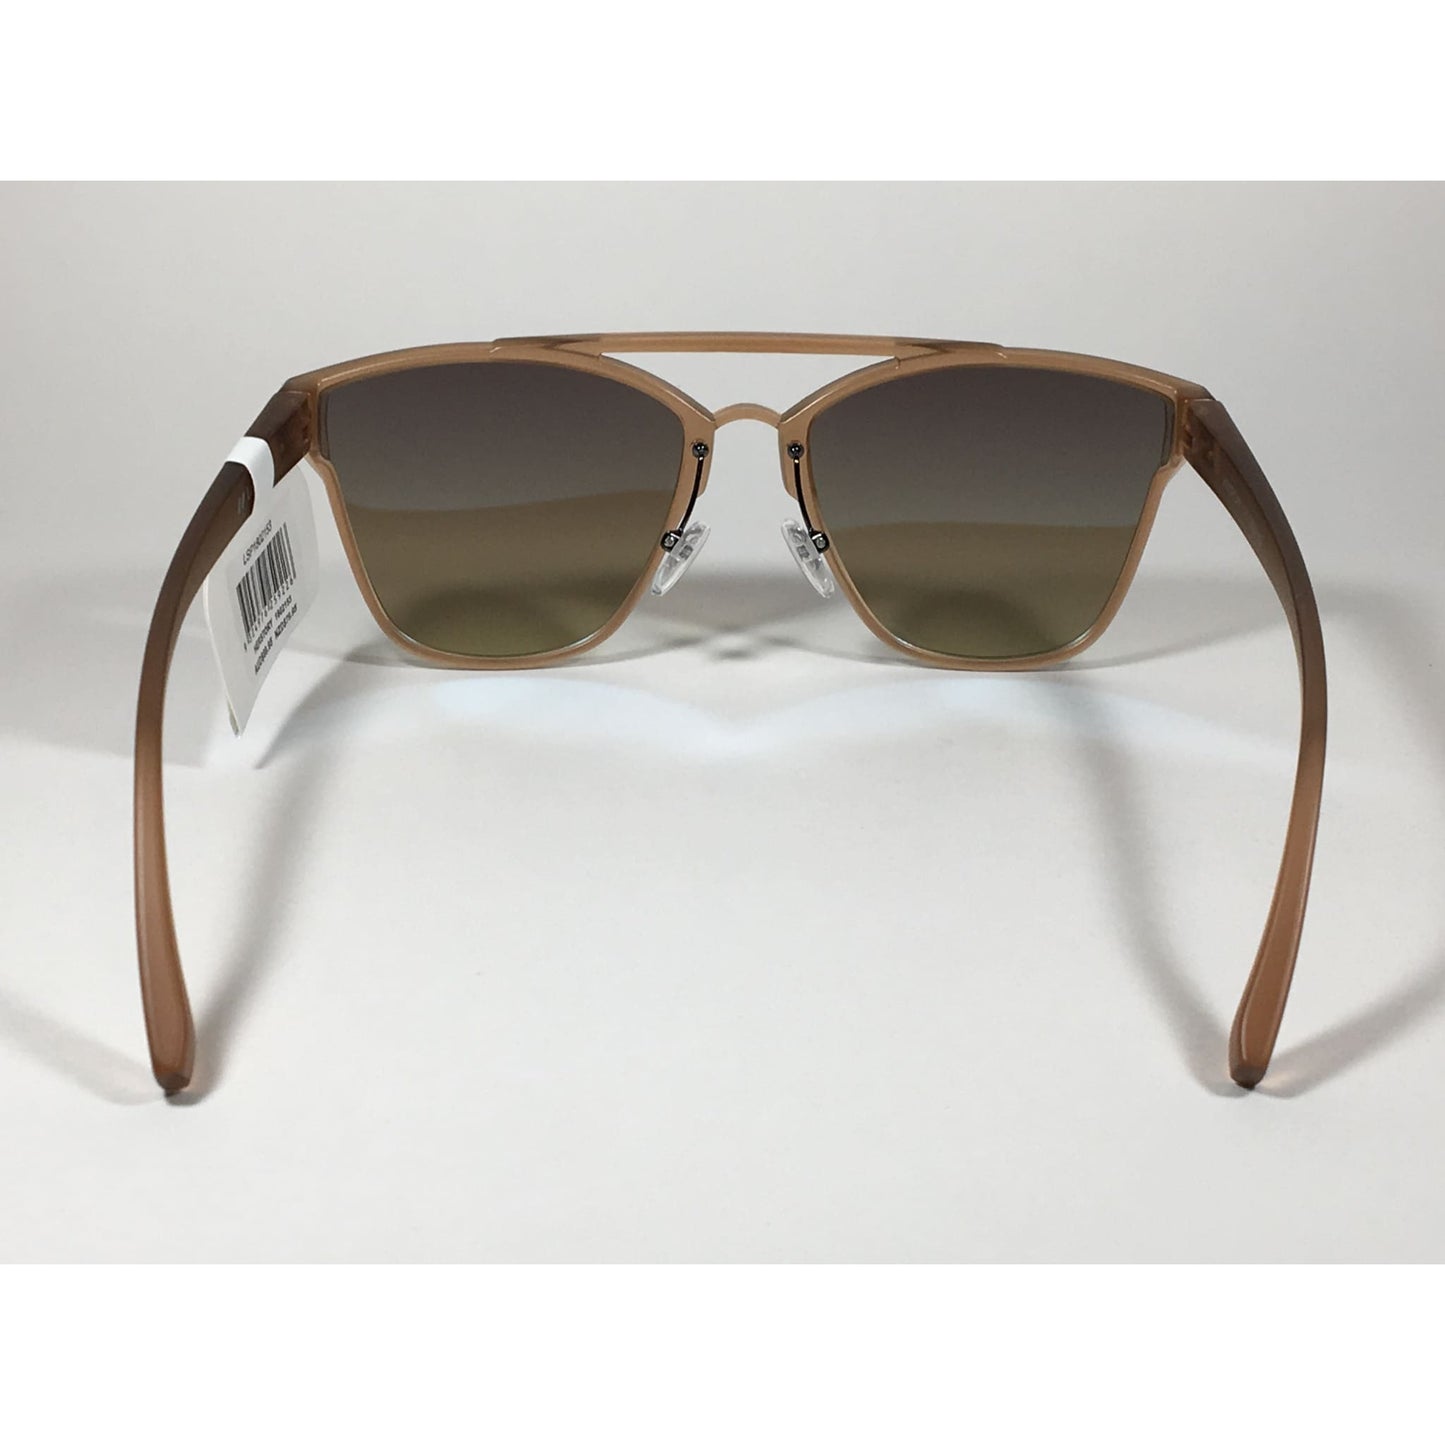 Le Specs Herstory Aviator Sunglasses Matte Ginger Frame Light Blue Mirror Lens LSP1802153 - Sunglasses